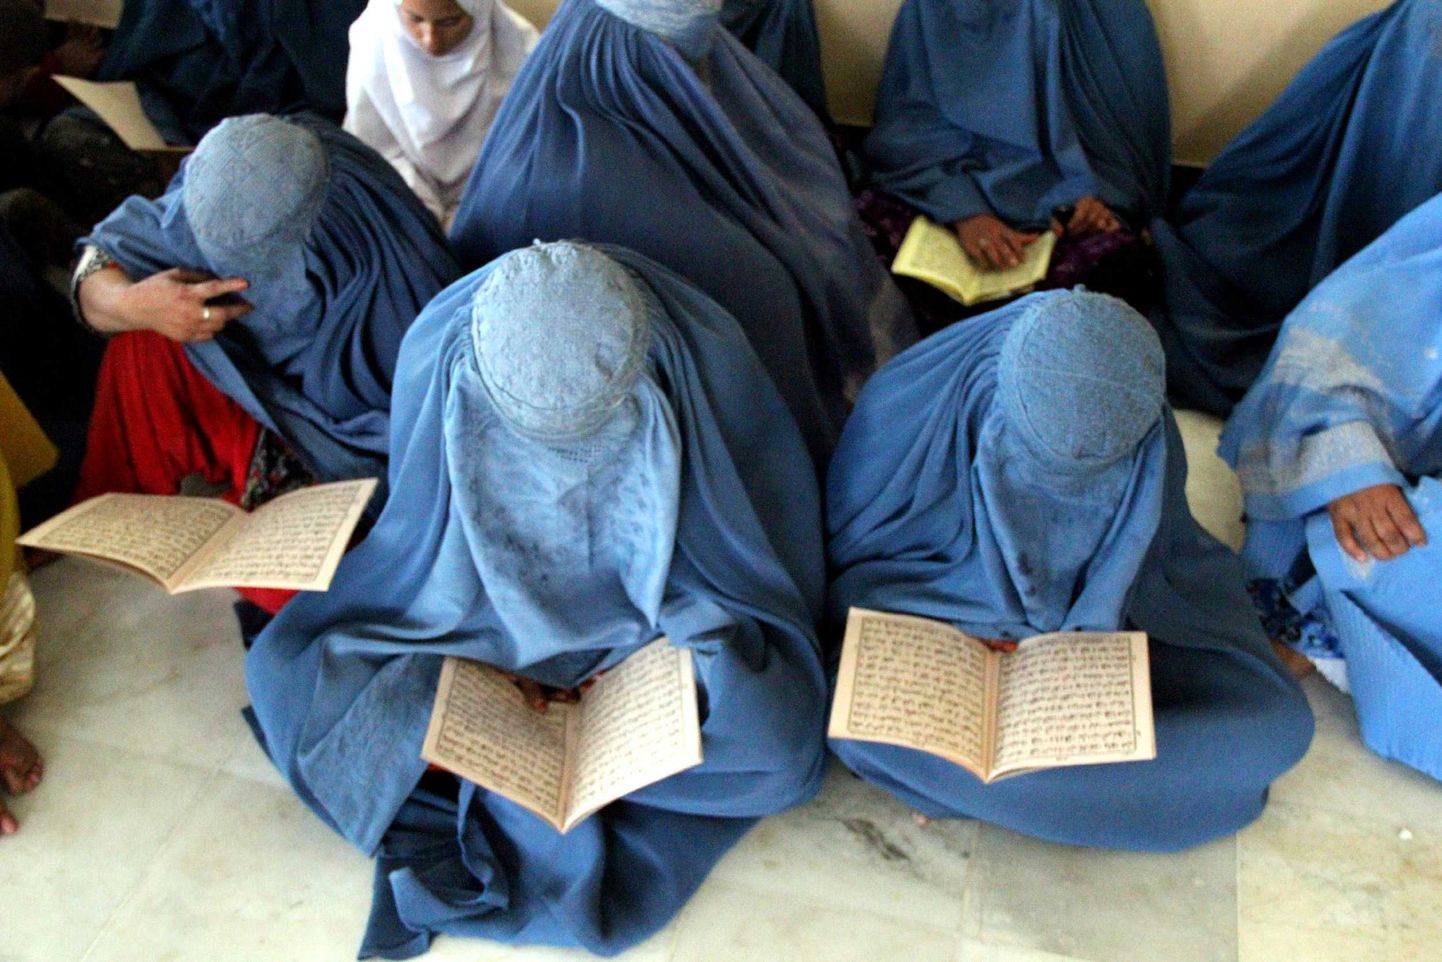 Afgaani naised koraani lugemas.